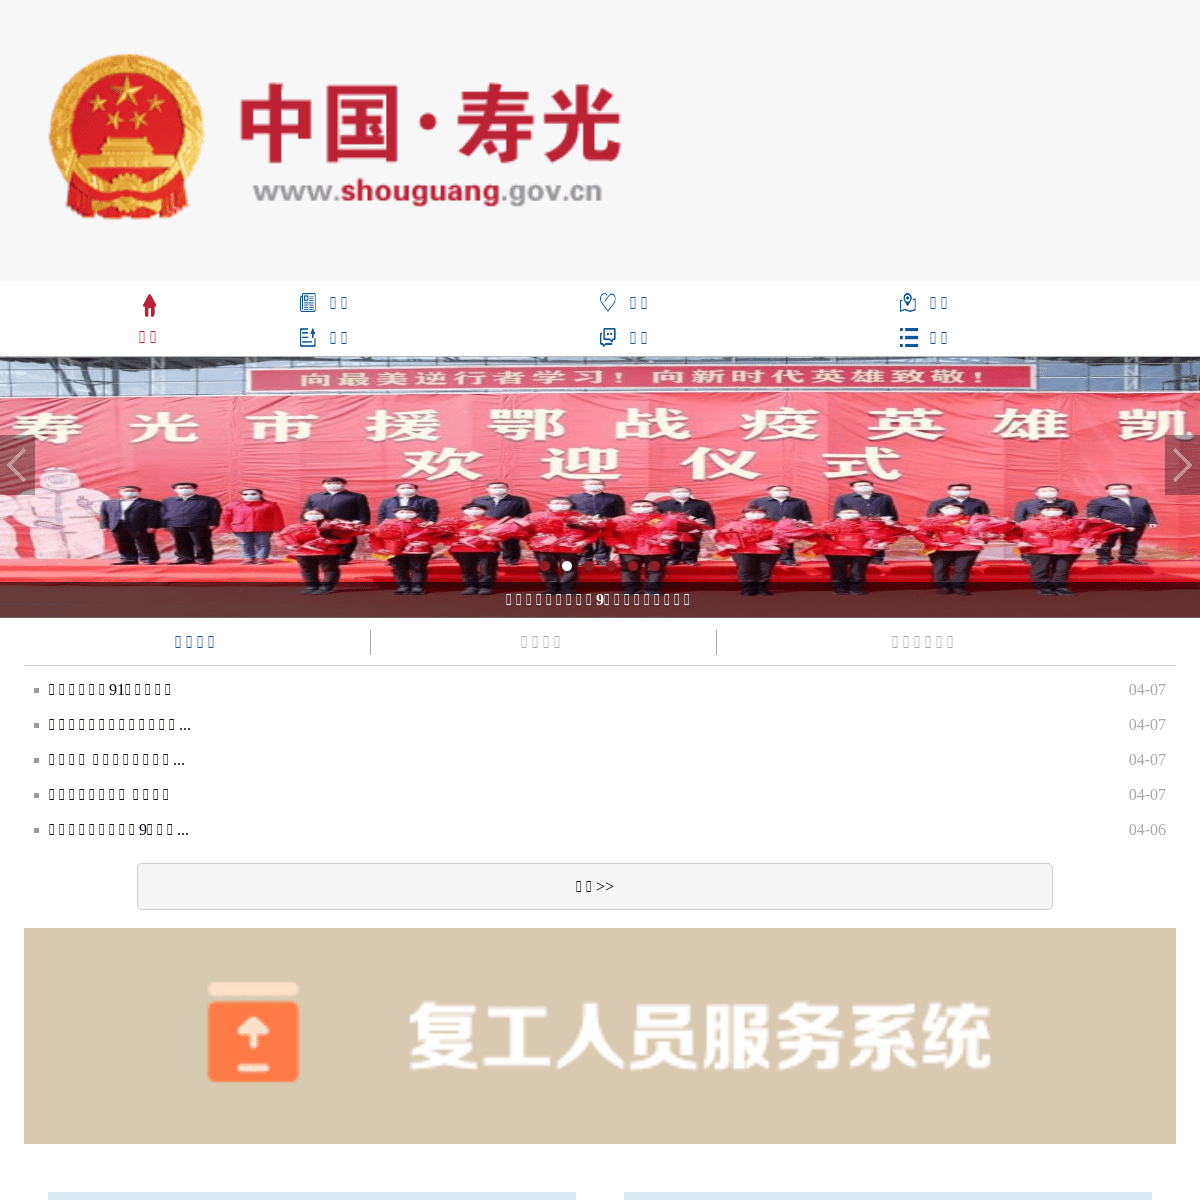 A complete backup of shouguang.gov.cn